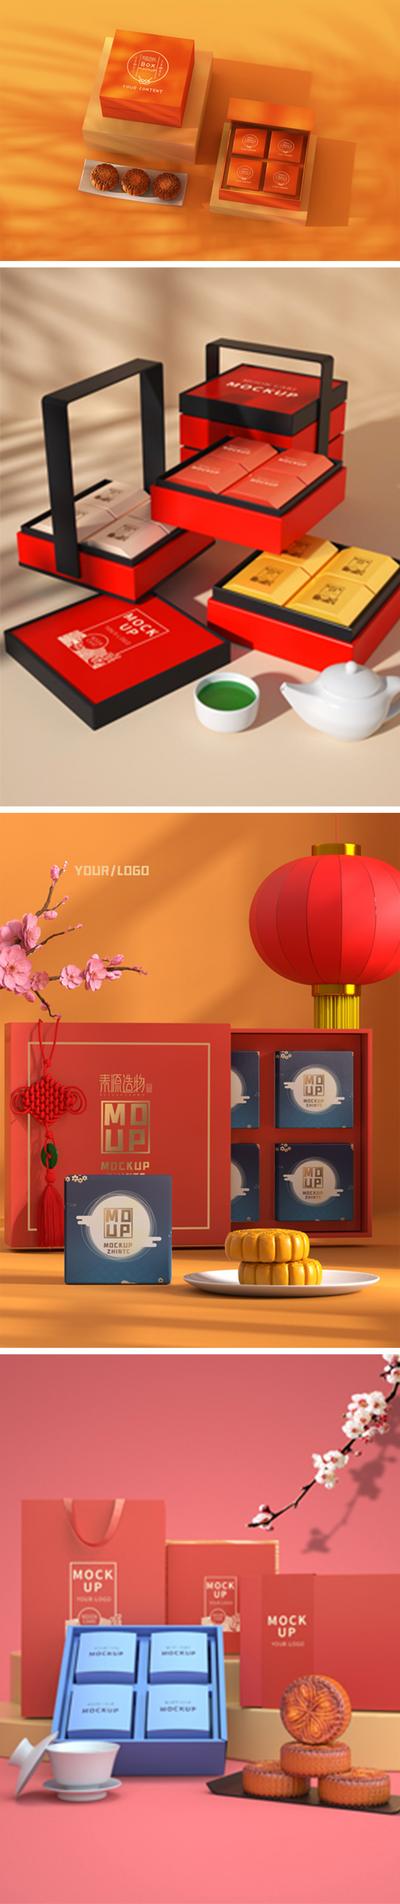 南门网 VI设计   logo样机  中秋节   月饼 包装盒   中国风  